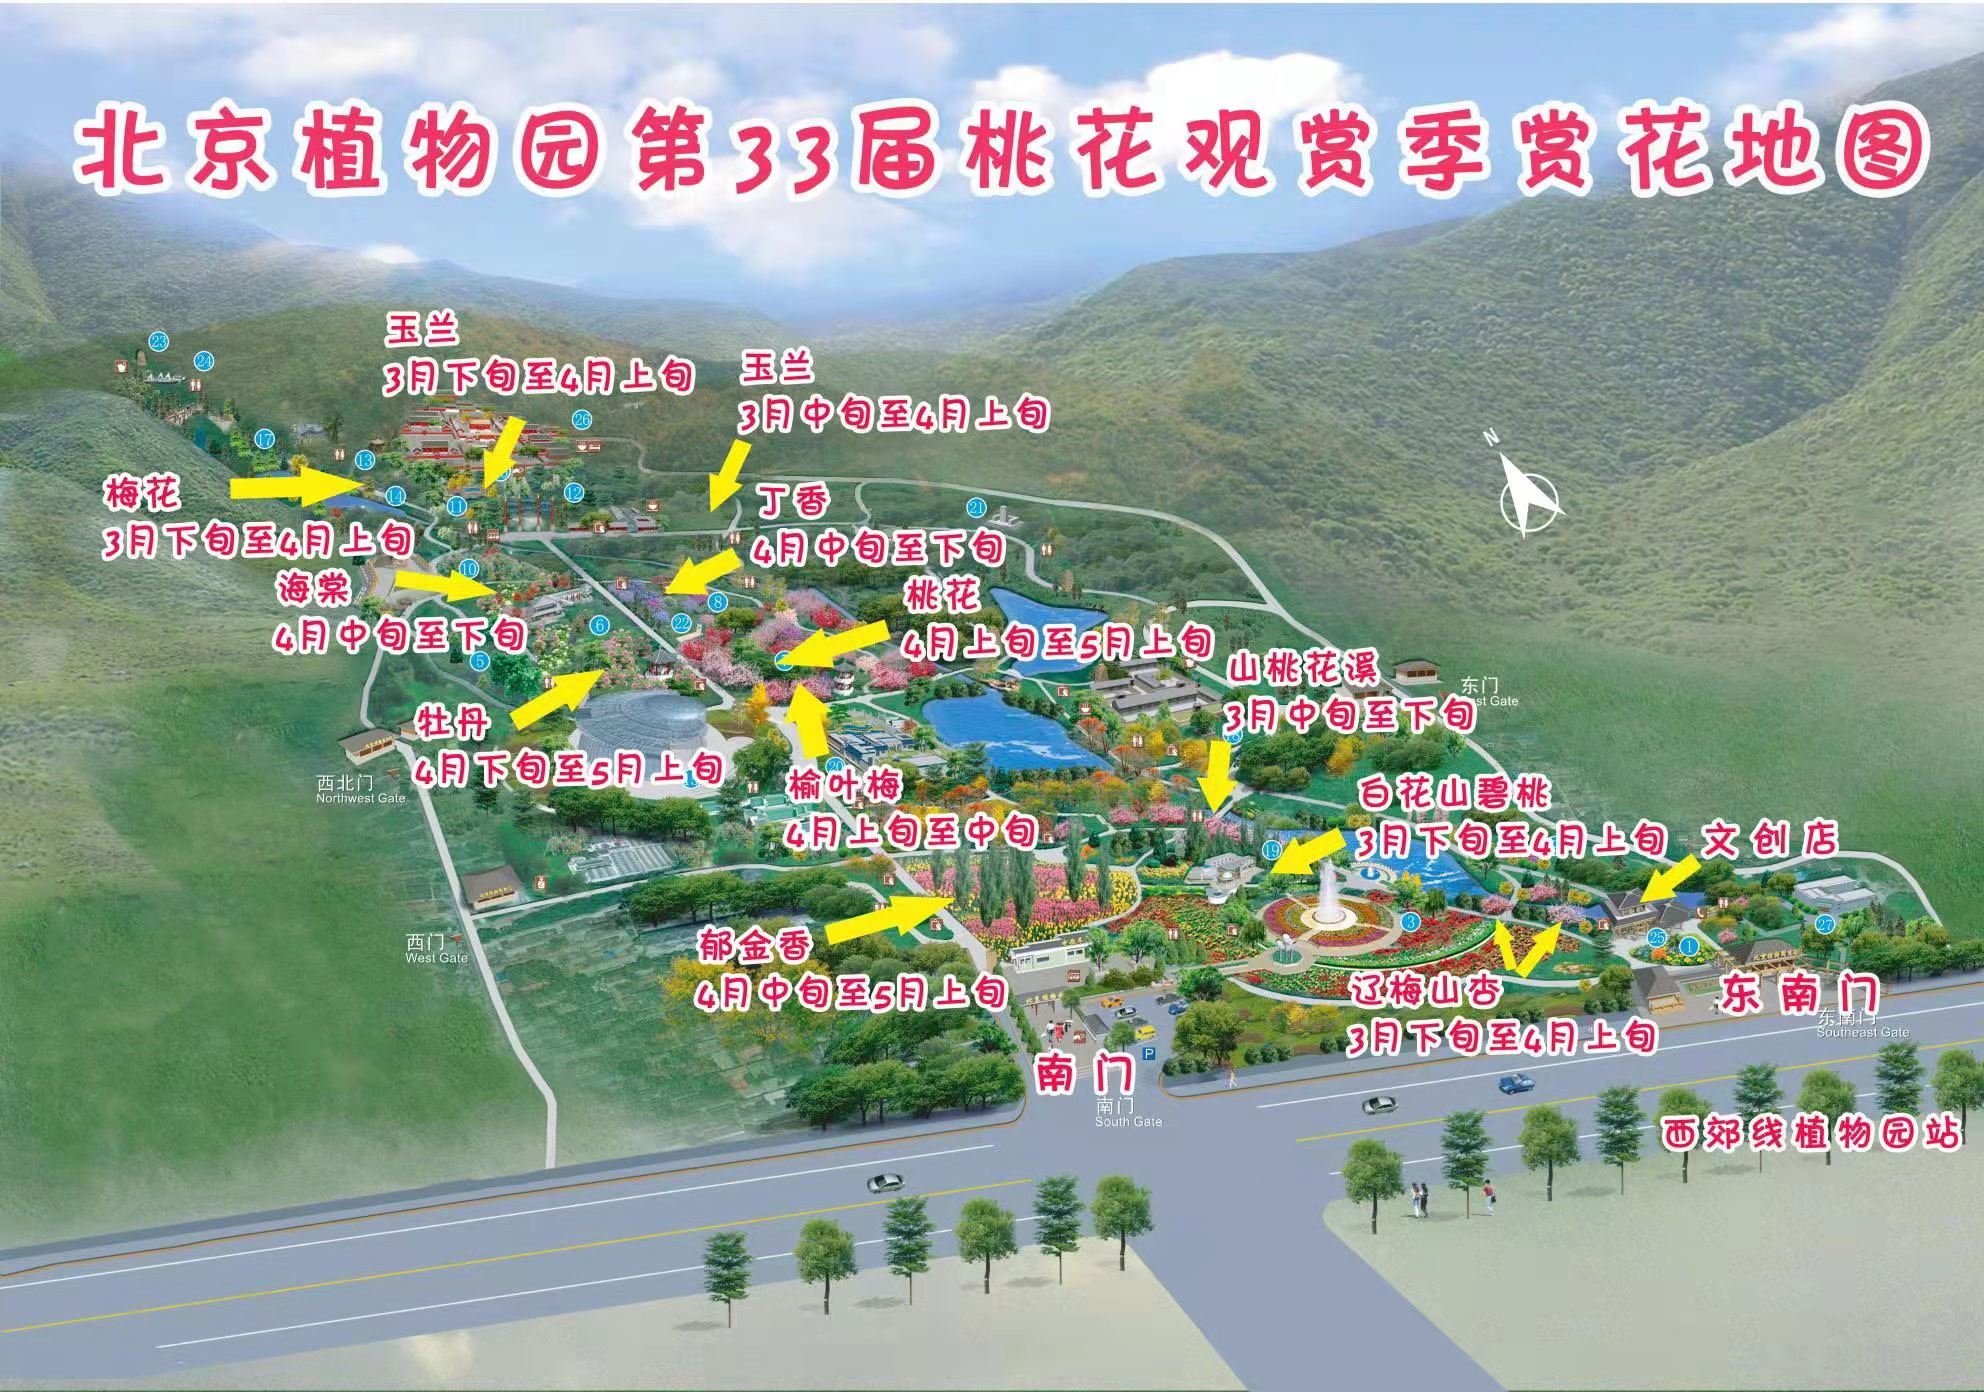 3月27日北京植物园桃花观赏季开幕 附赏花地图